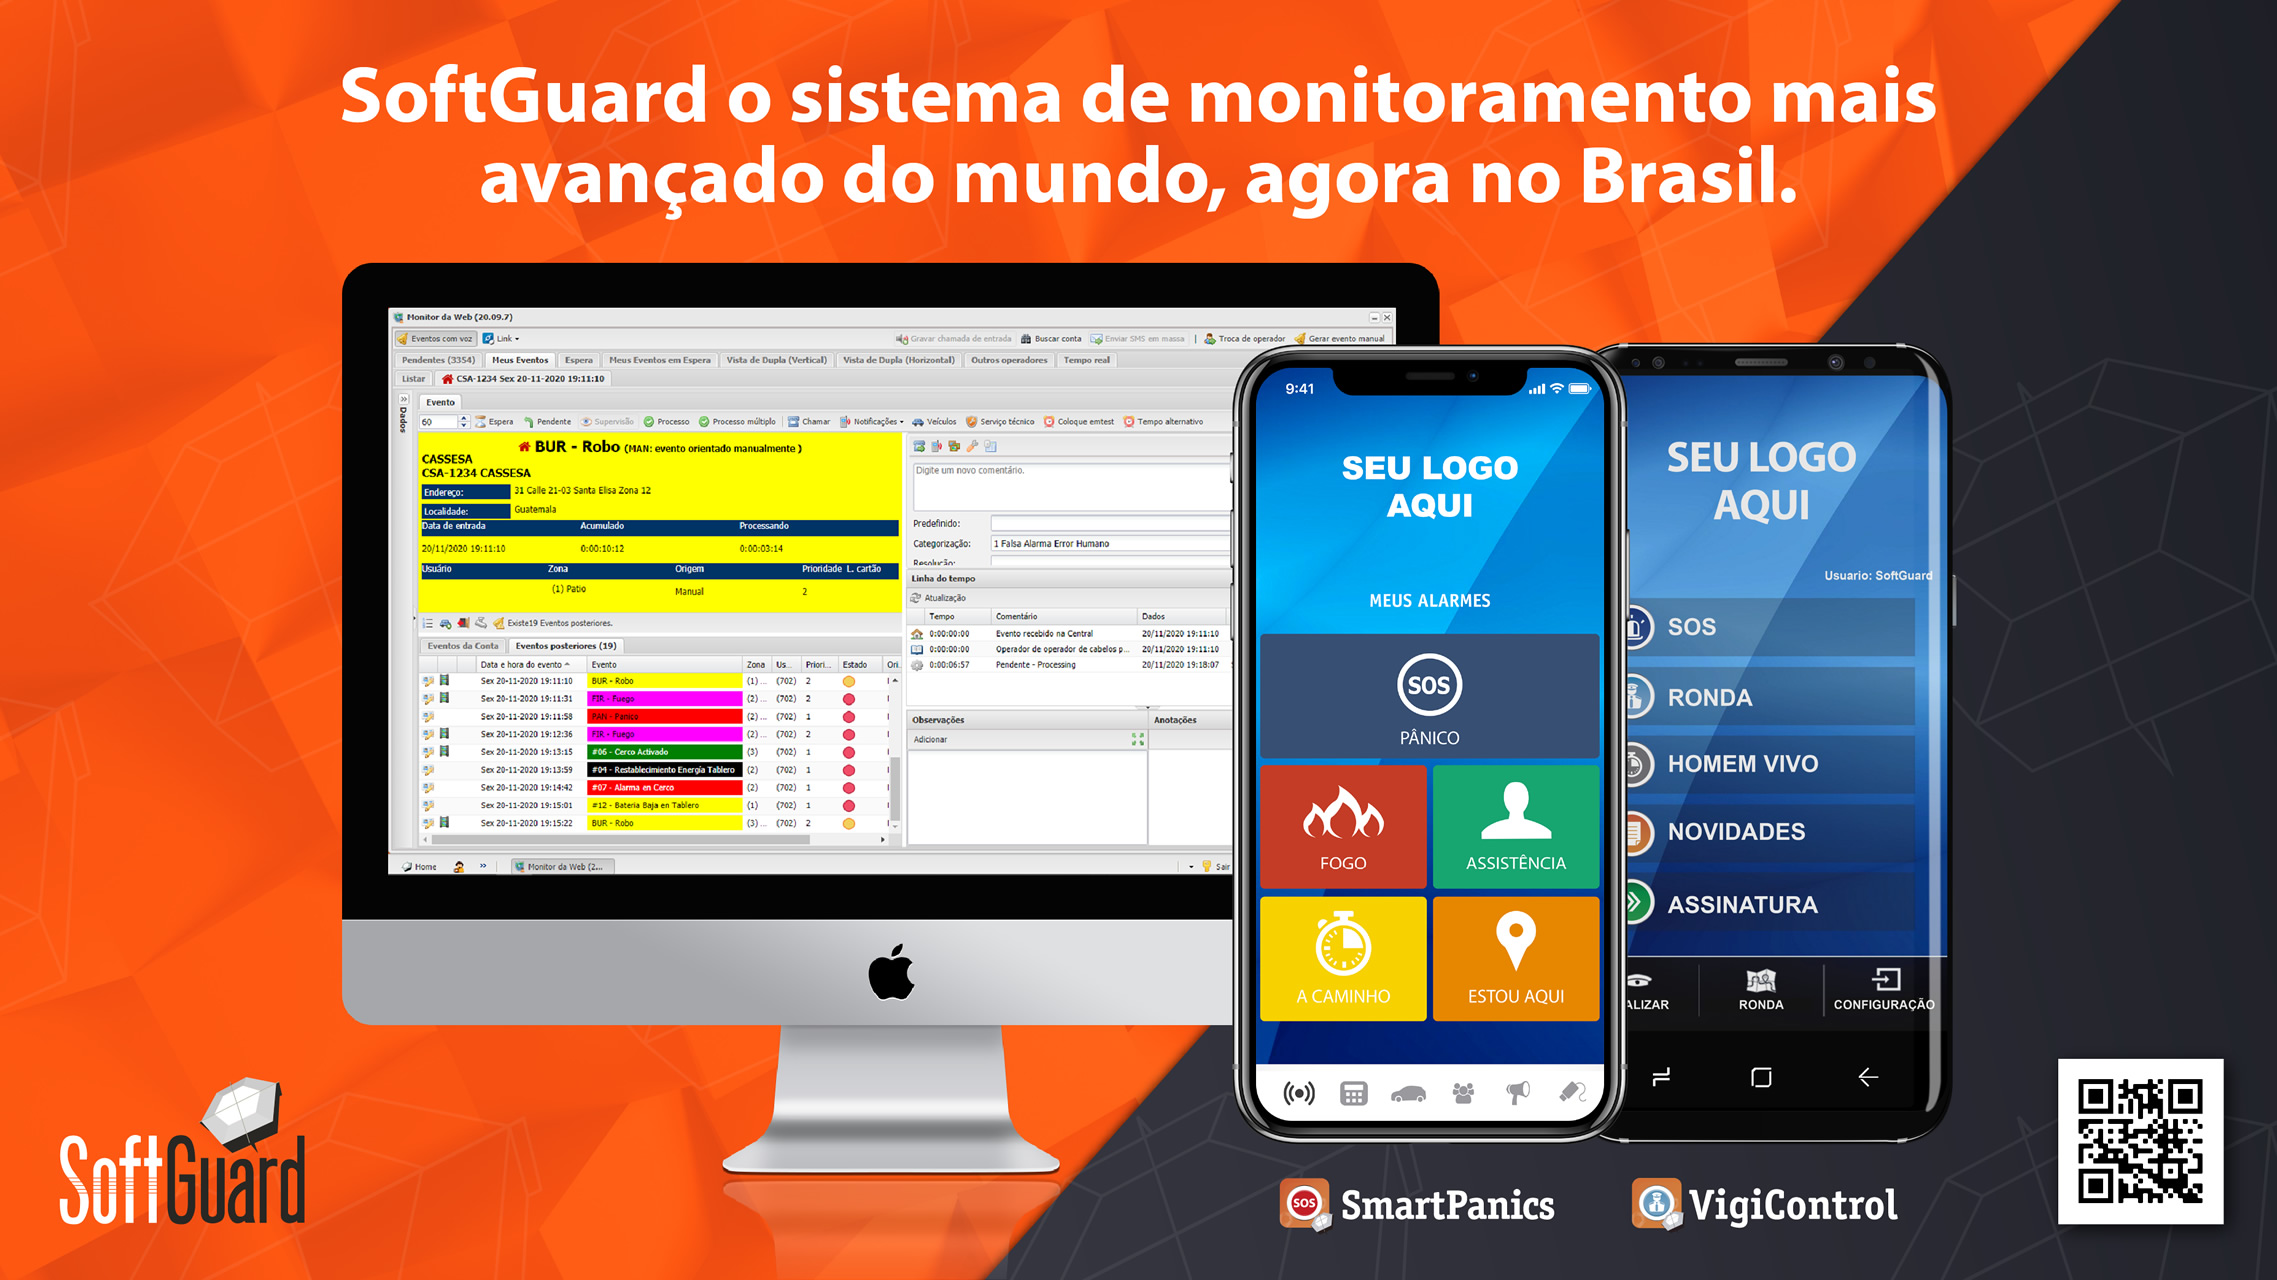 SoftGuard aposta em aplicativos integrados a sistemas de monitoramento